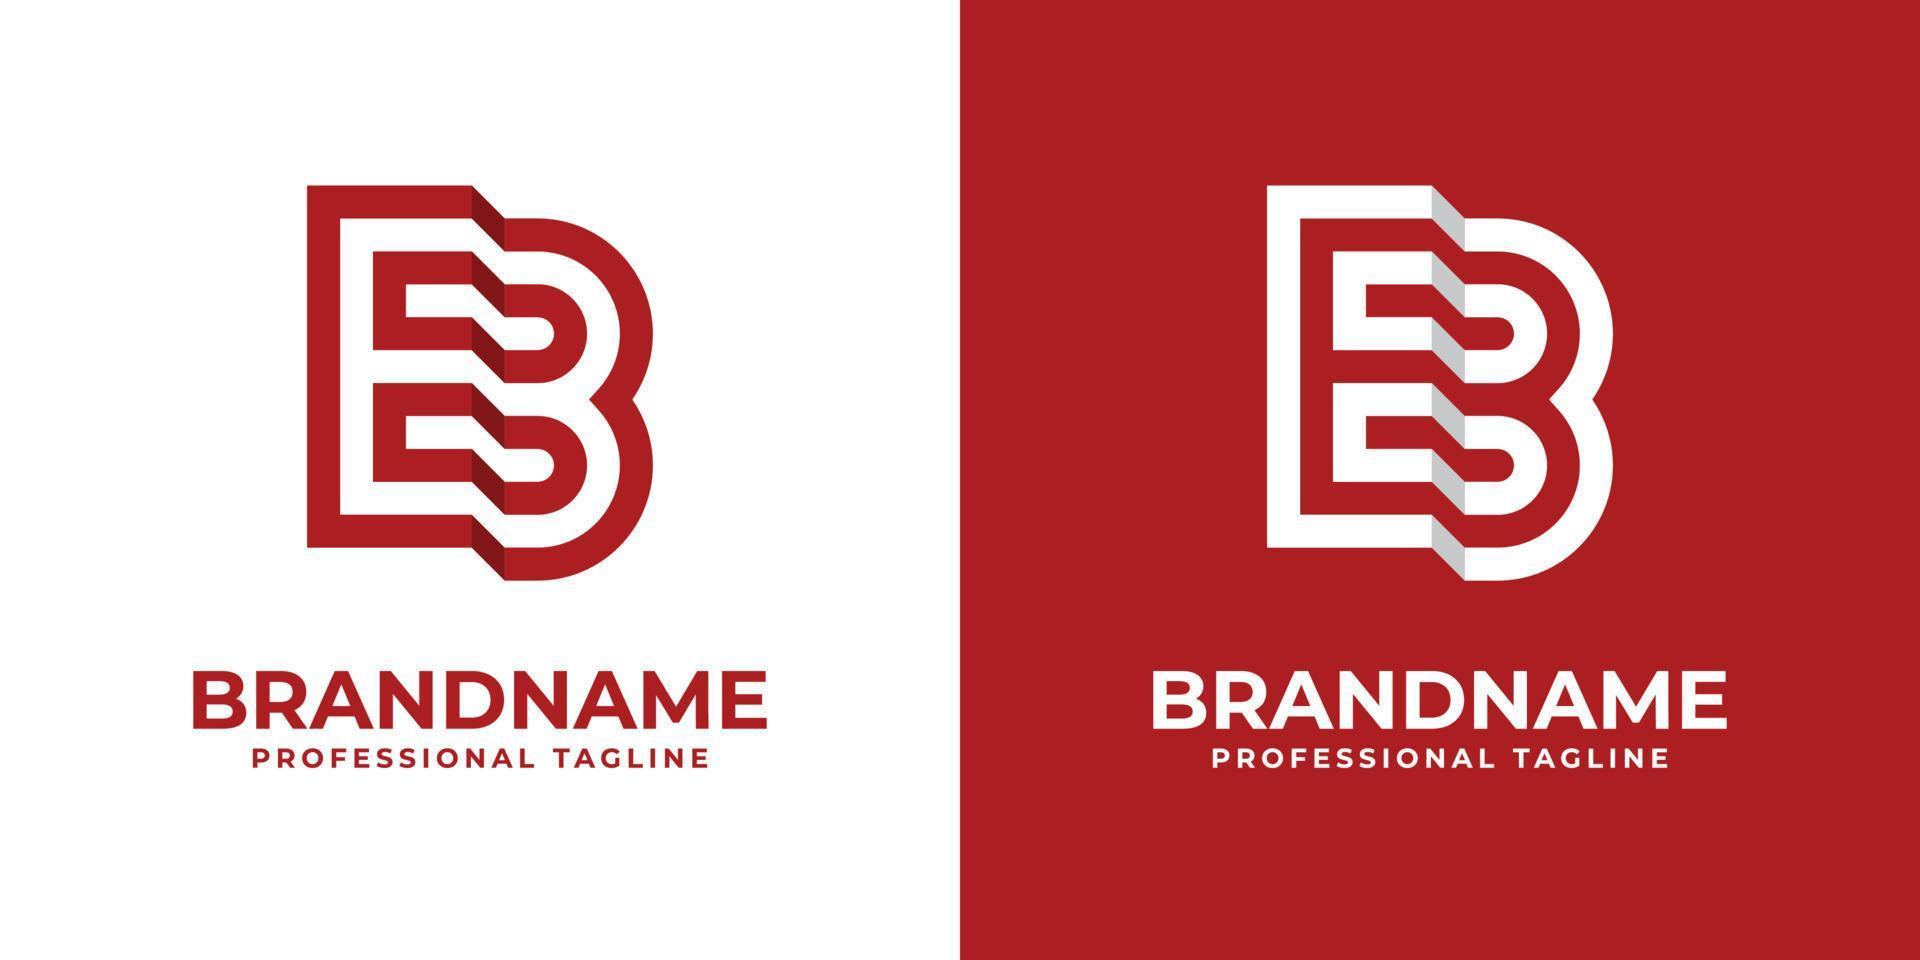 logotipo moderno da letra eb, adequado para qualquer empresa ou identidade com as iniciais eb be. vetor